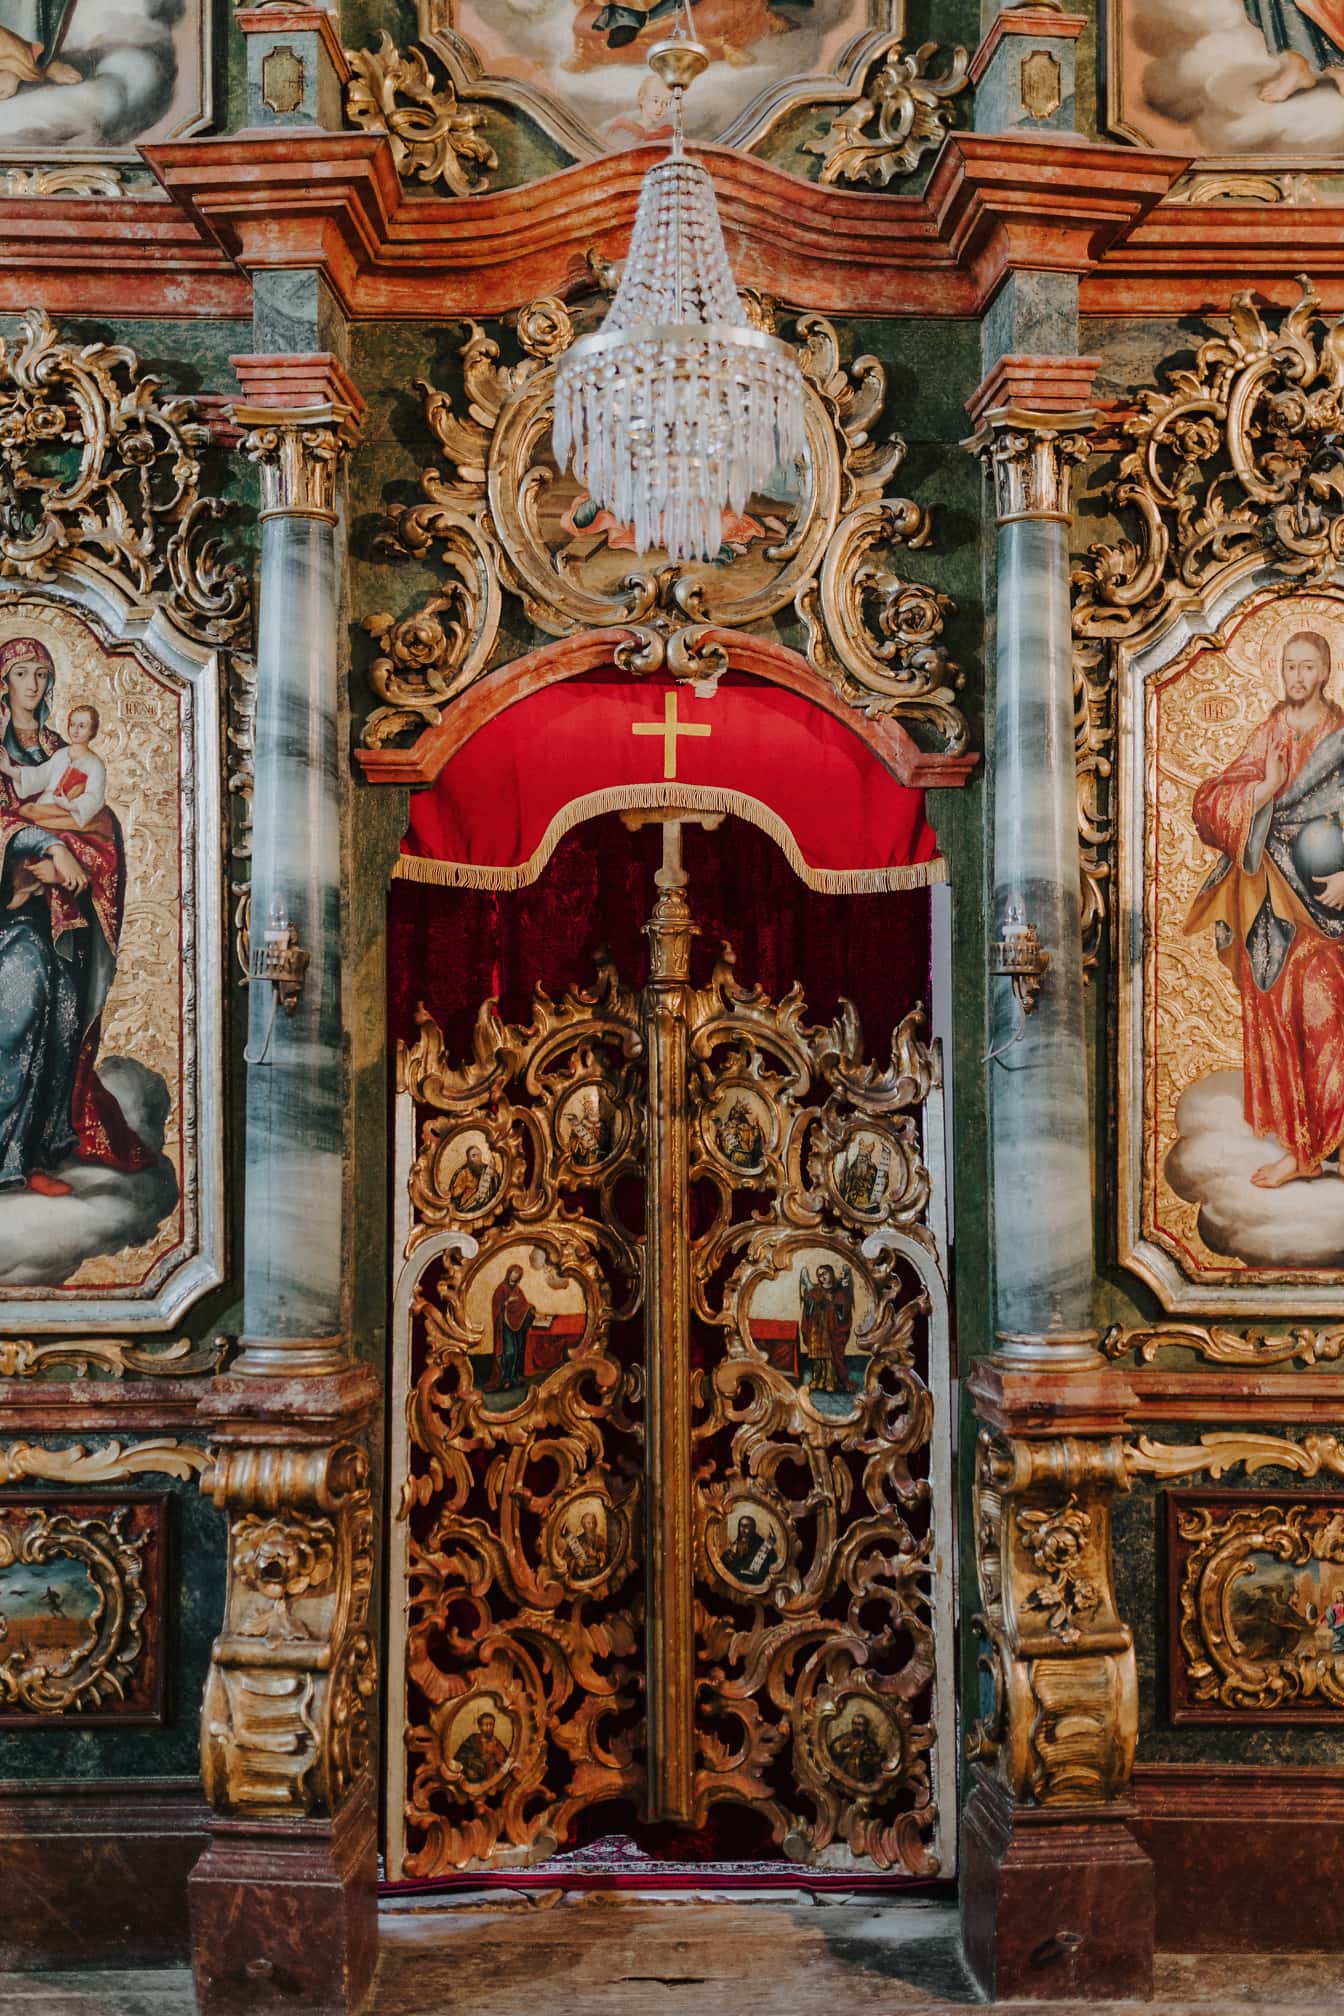 Eingangstür am Altar in der russisch-orthodoxen Kirche mit Kristallleuchter darüber